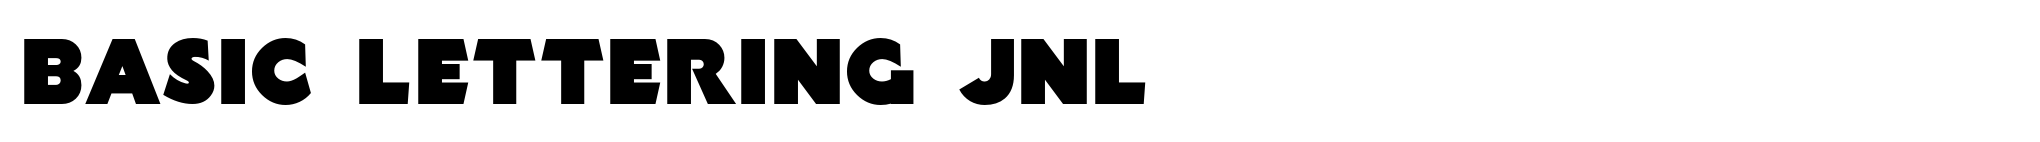 Basic Lettering JNL image